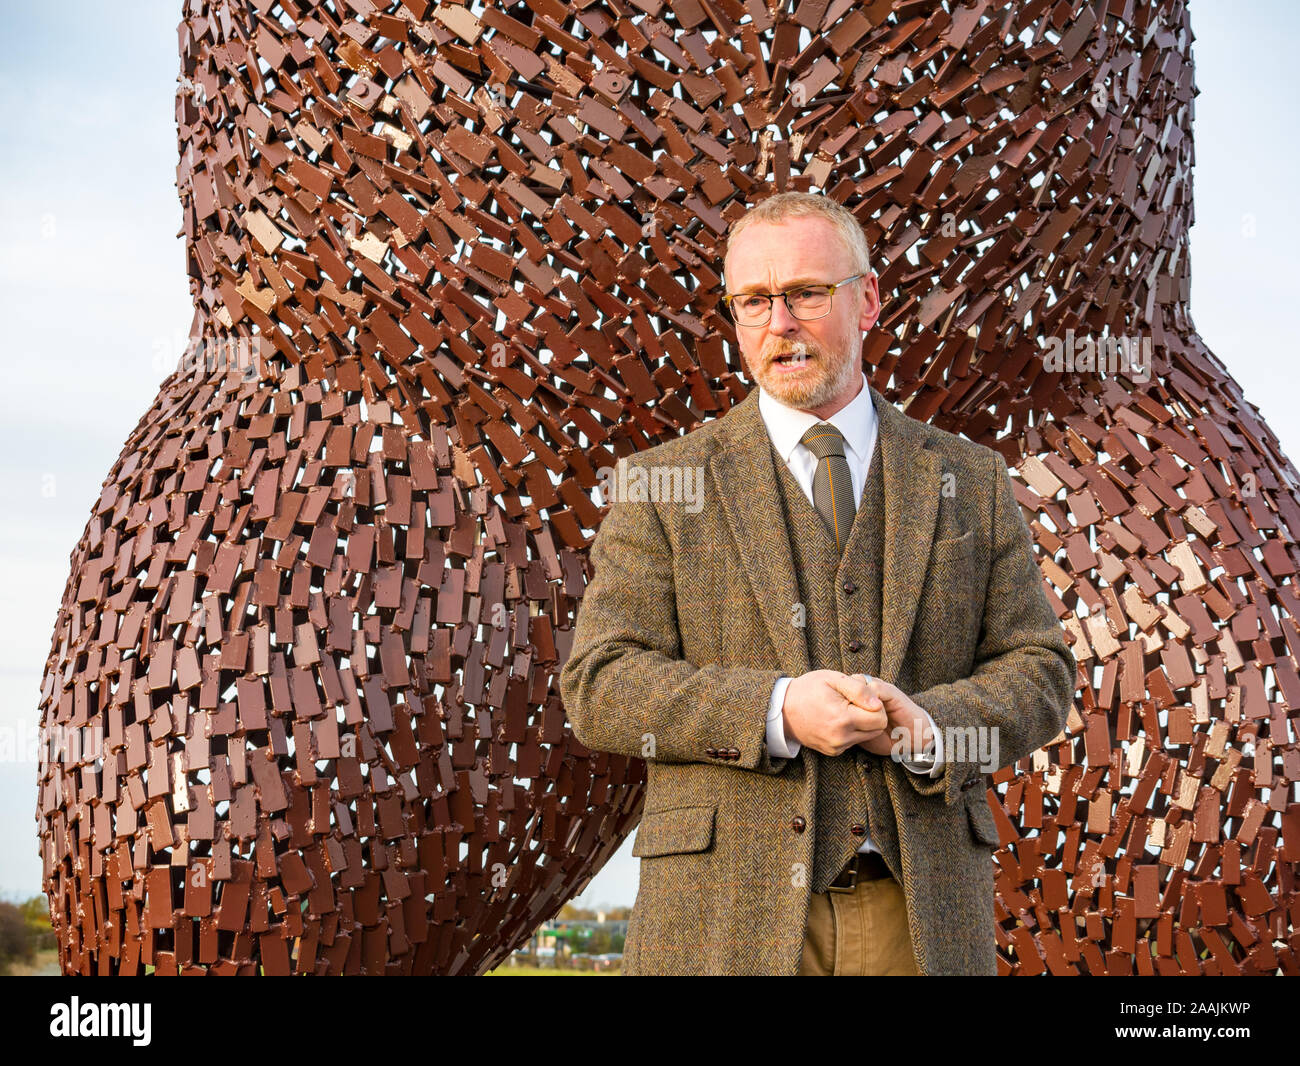 Dévoilement de la sculpture de l'ours pour célébrer la vie de John Muir par sculpteur Écossais Andy Scott, Dunbar, East Lothian, Scotland, UK Banque D'Images